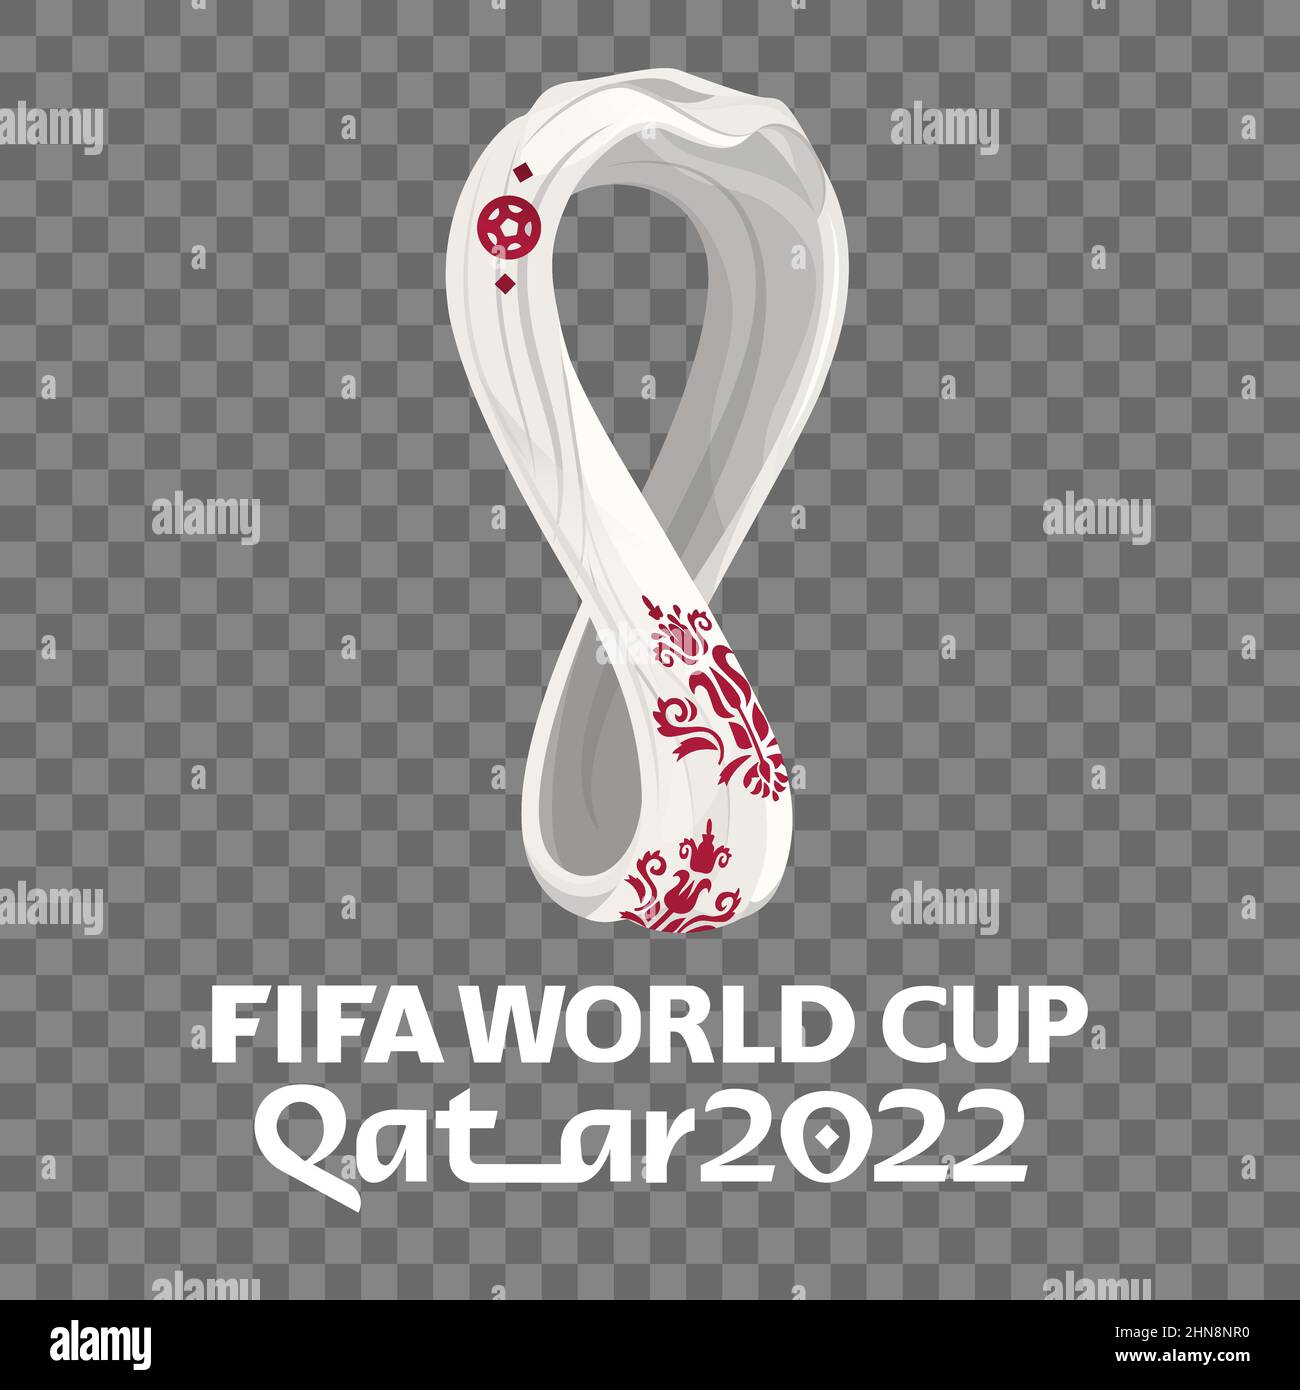 Official logo fifa world cup qatar 2022 mondial Vector Image